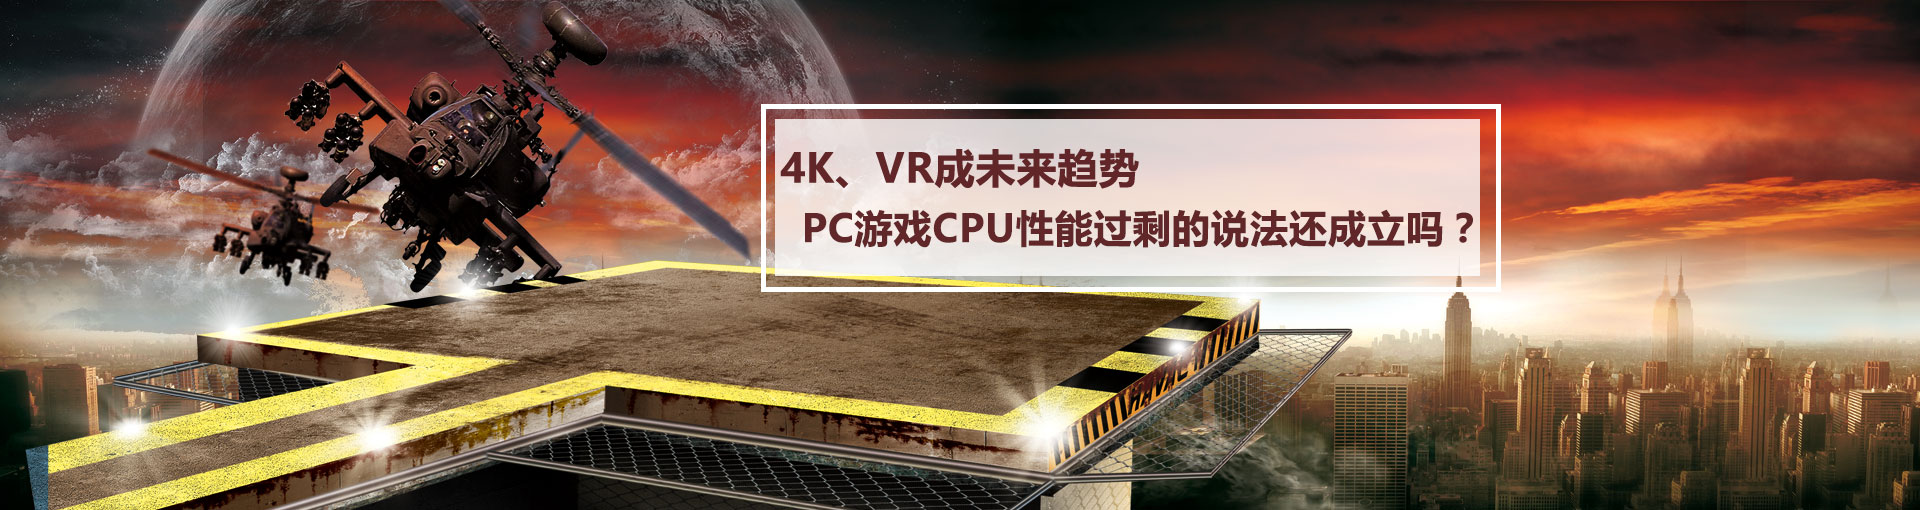 4K、VR成未来趋势 PC游戏CPU性能过剩的说法还成立吗？